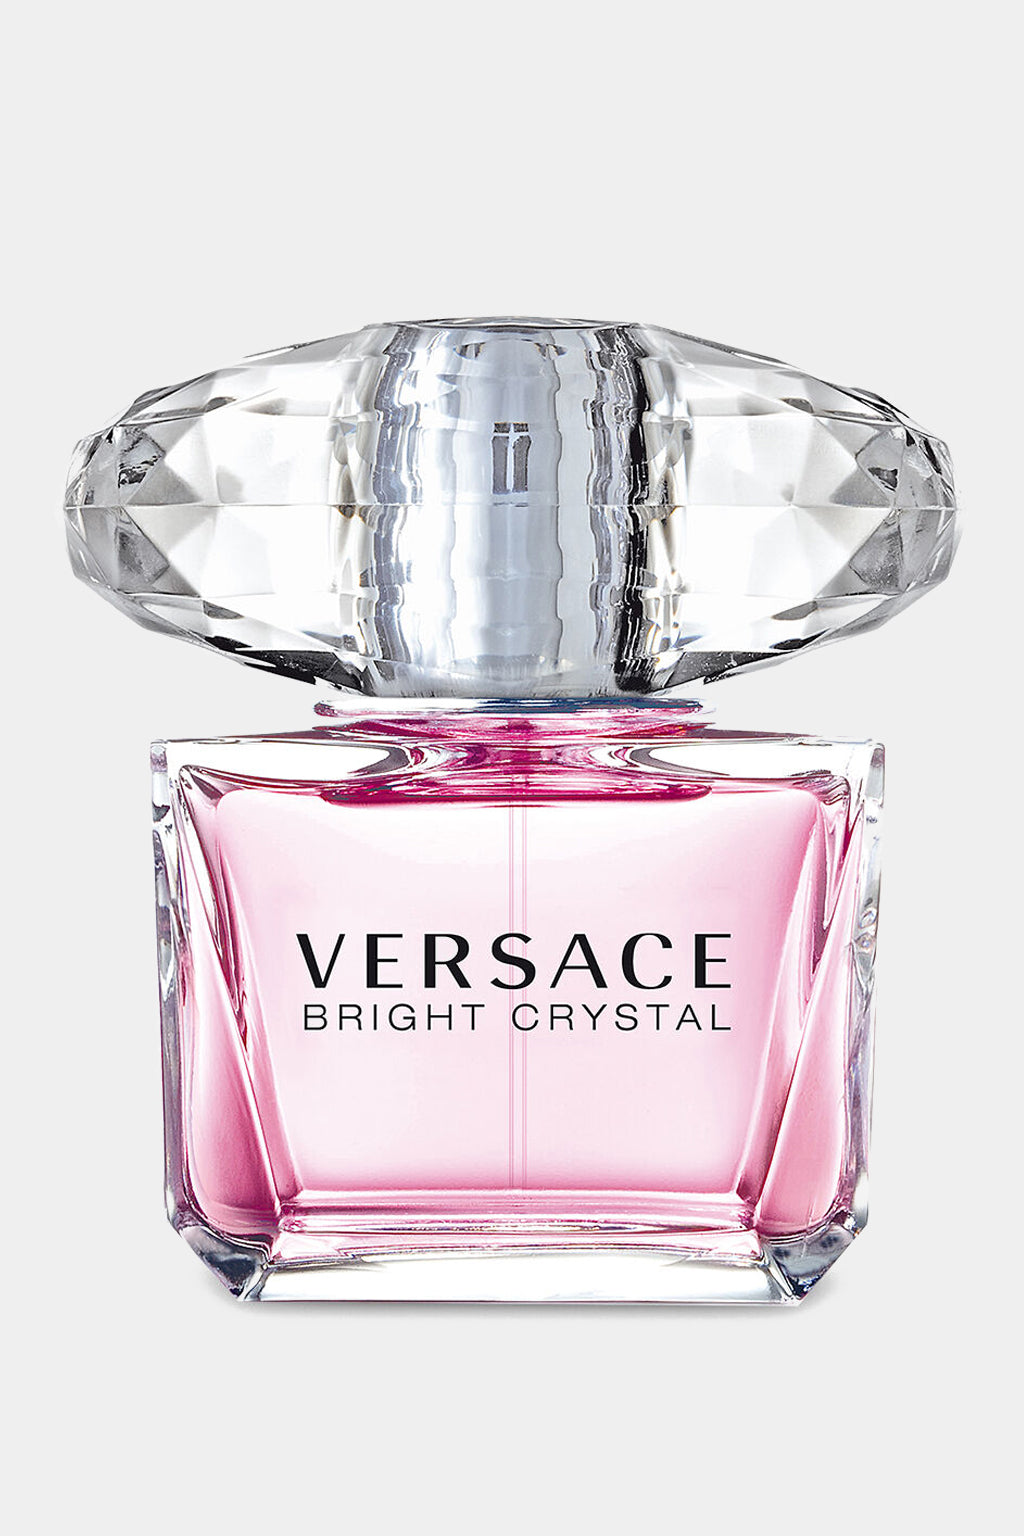 Versace - Bright Crystal Eau de Toilette